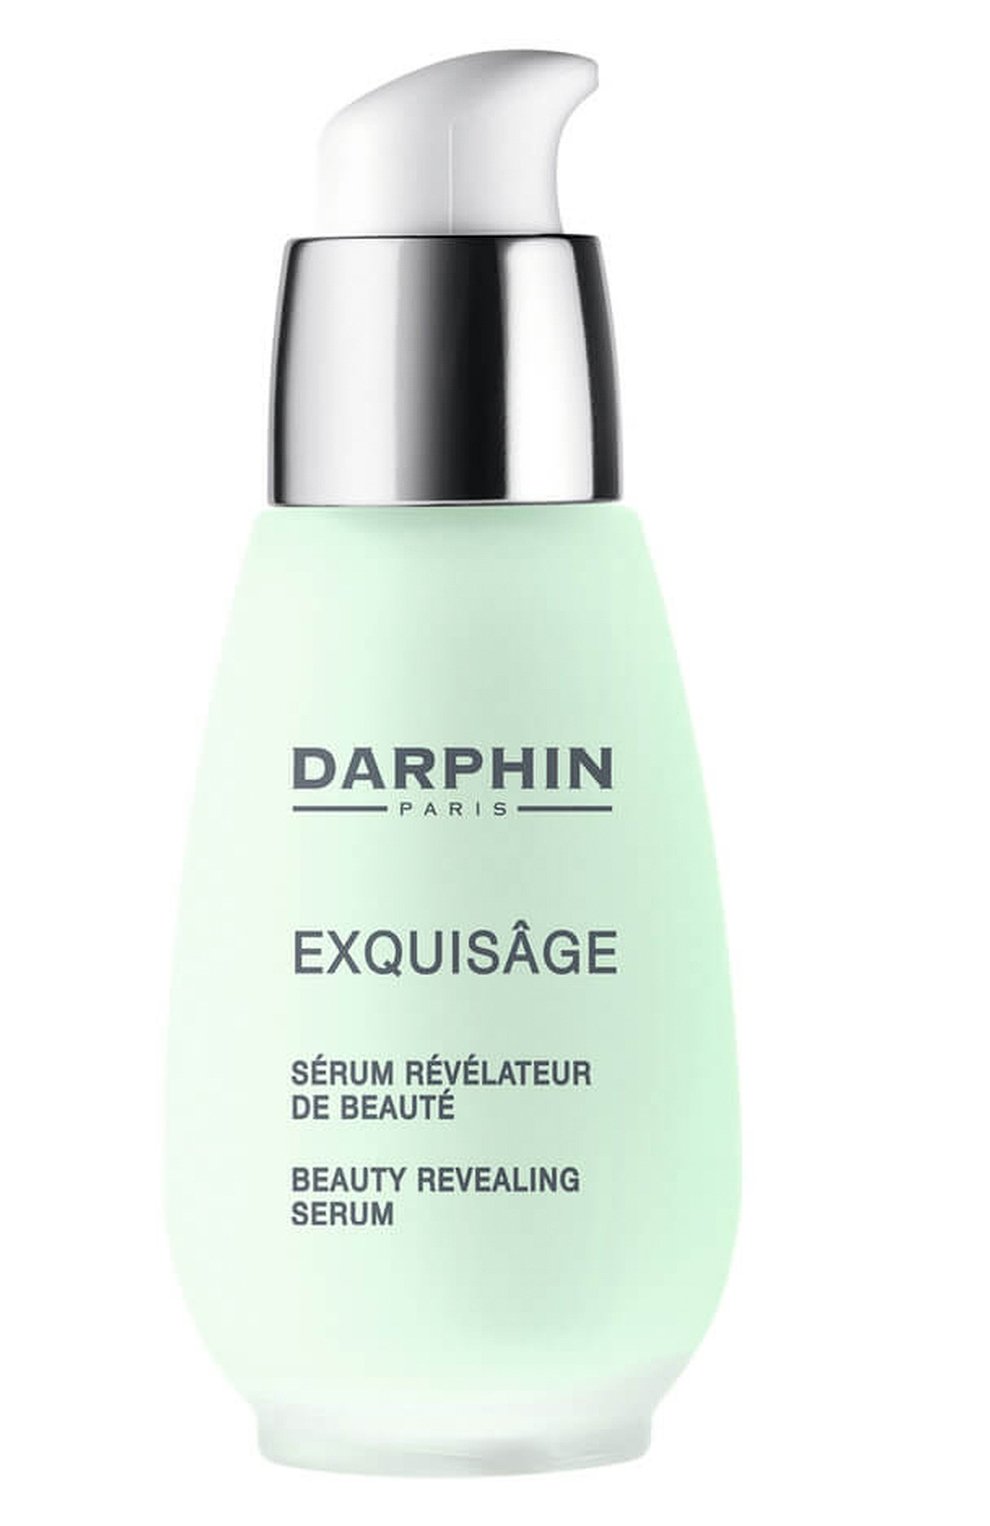 Darphin Exquisage. Успокаивающая сыворотка для лица Darphin. Шисейдо сыворотка для лица.